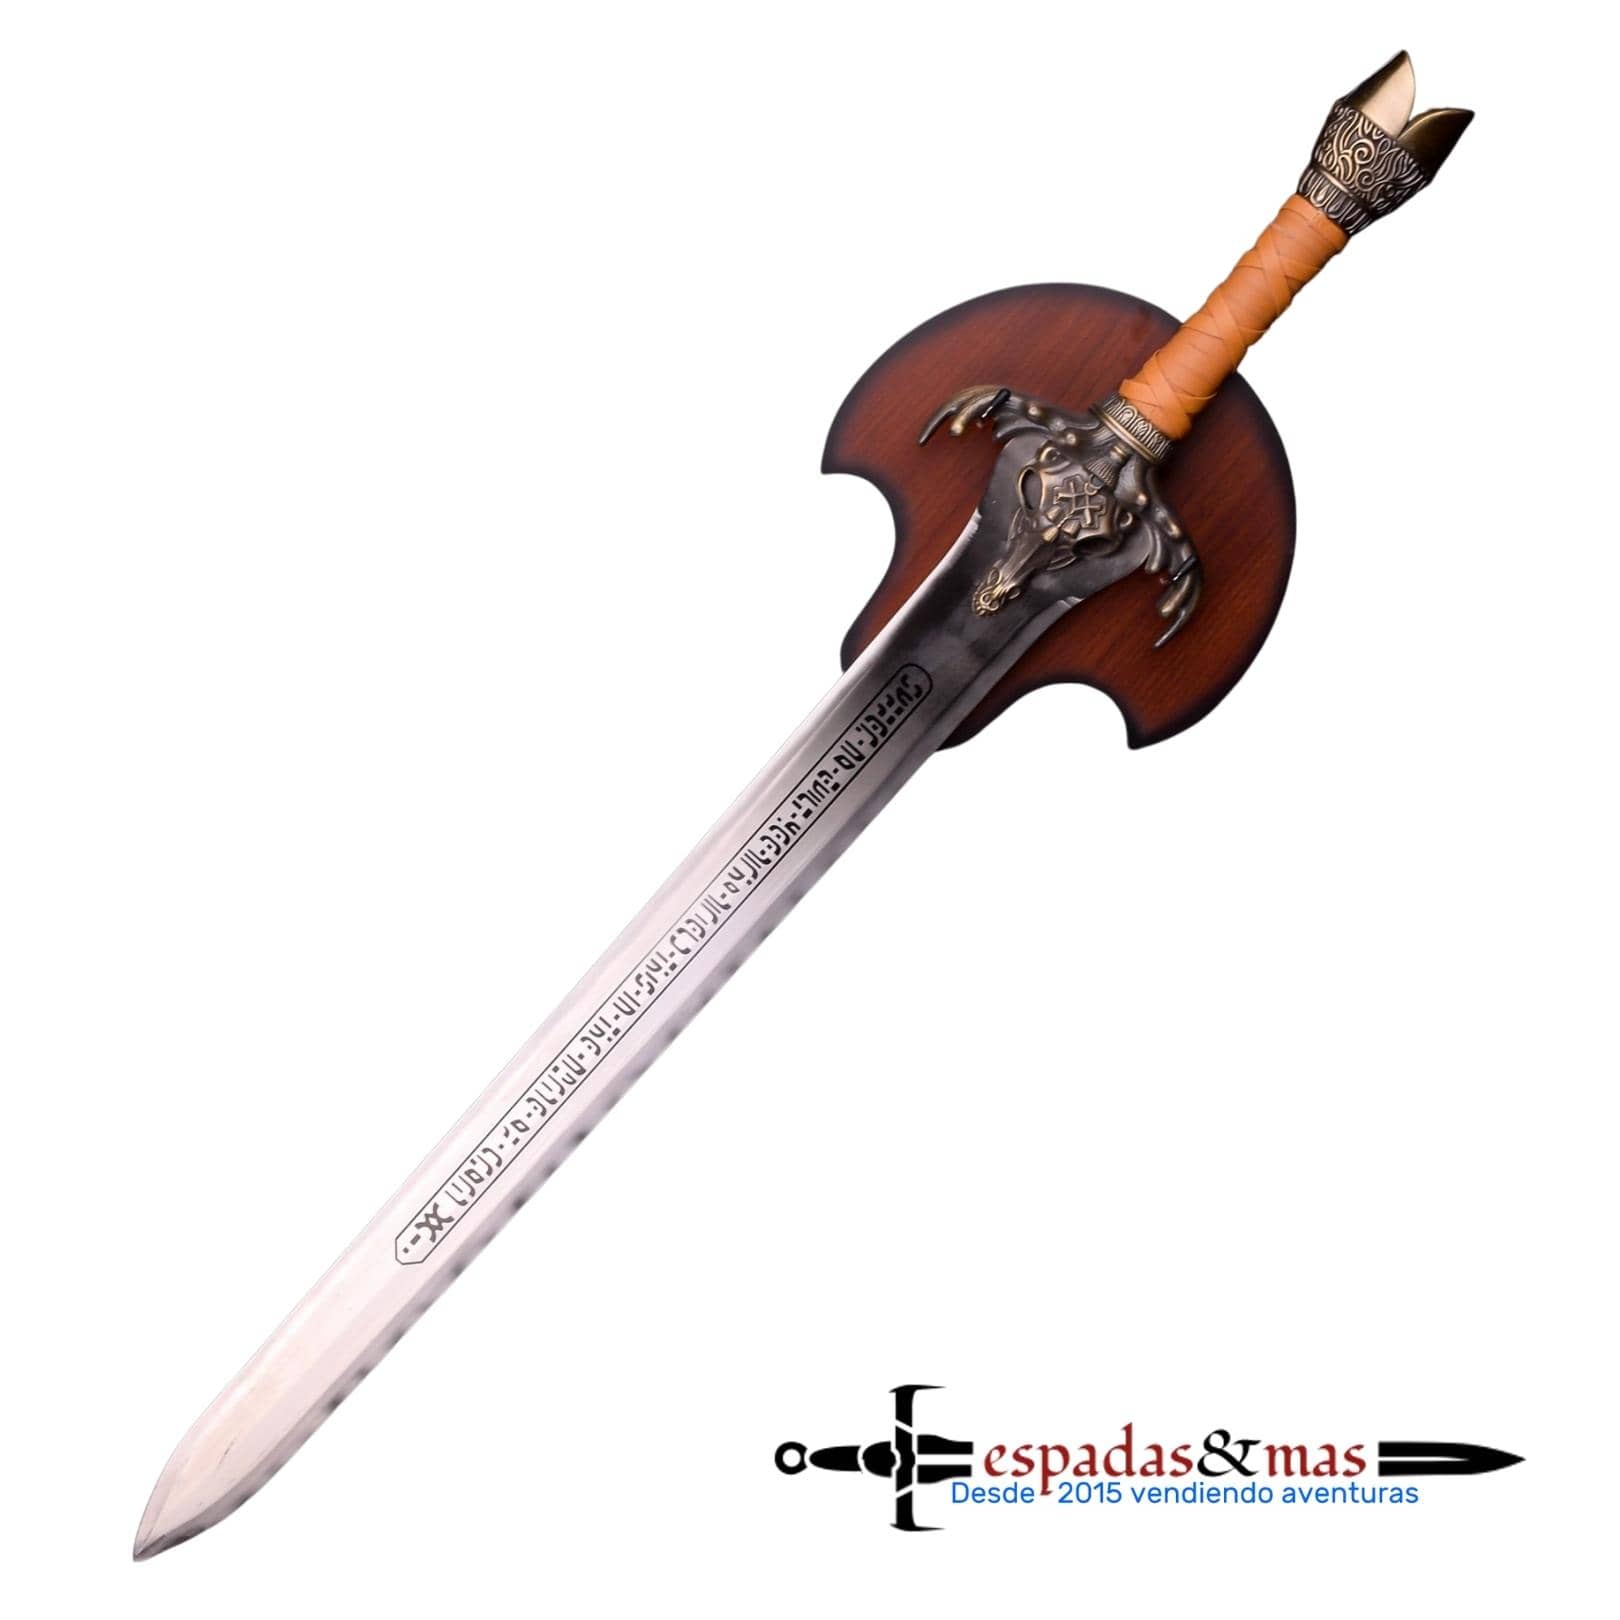 Espada del Padre de Conan El Bárbaro con detalle en la hoja y soporte color madera. Vendida por Espadas y más